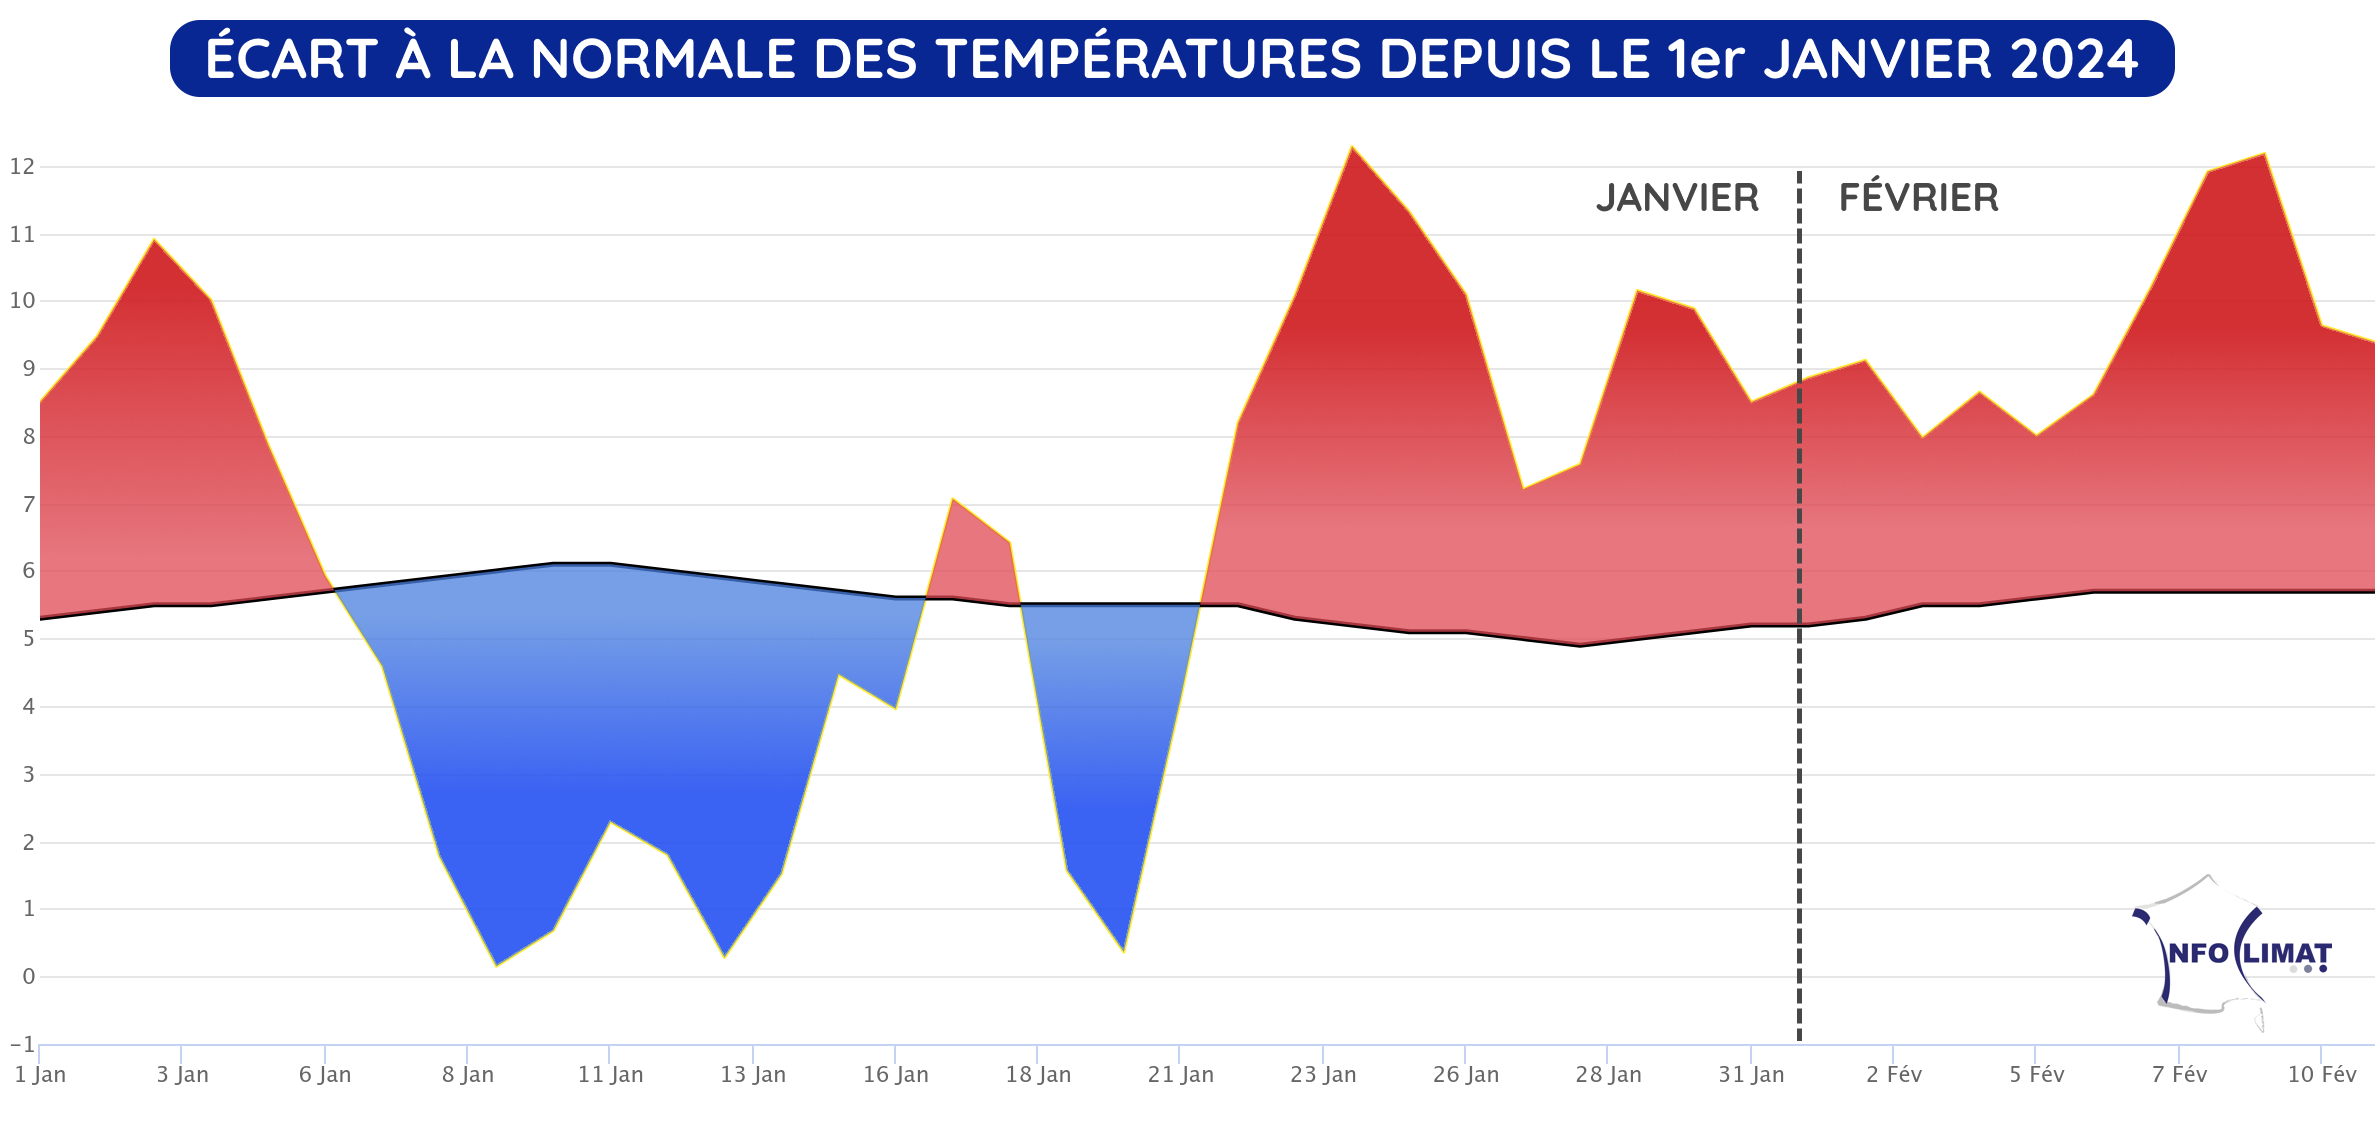 Écart à la normale des températures en France du 1er janvier au 11 février 2024 